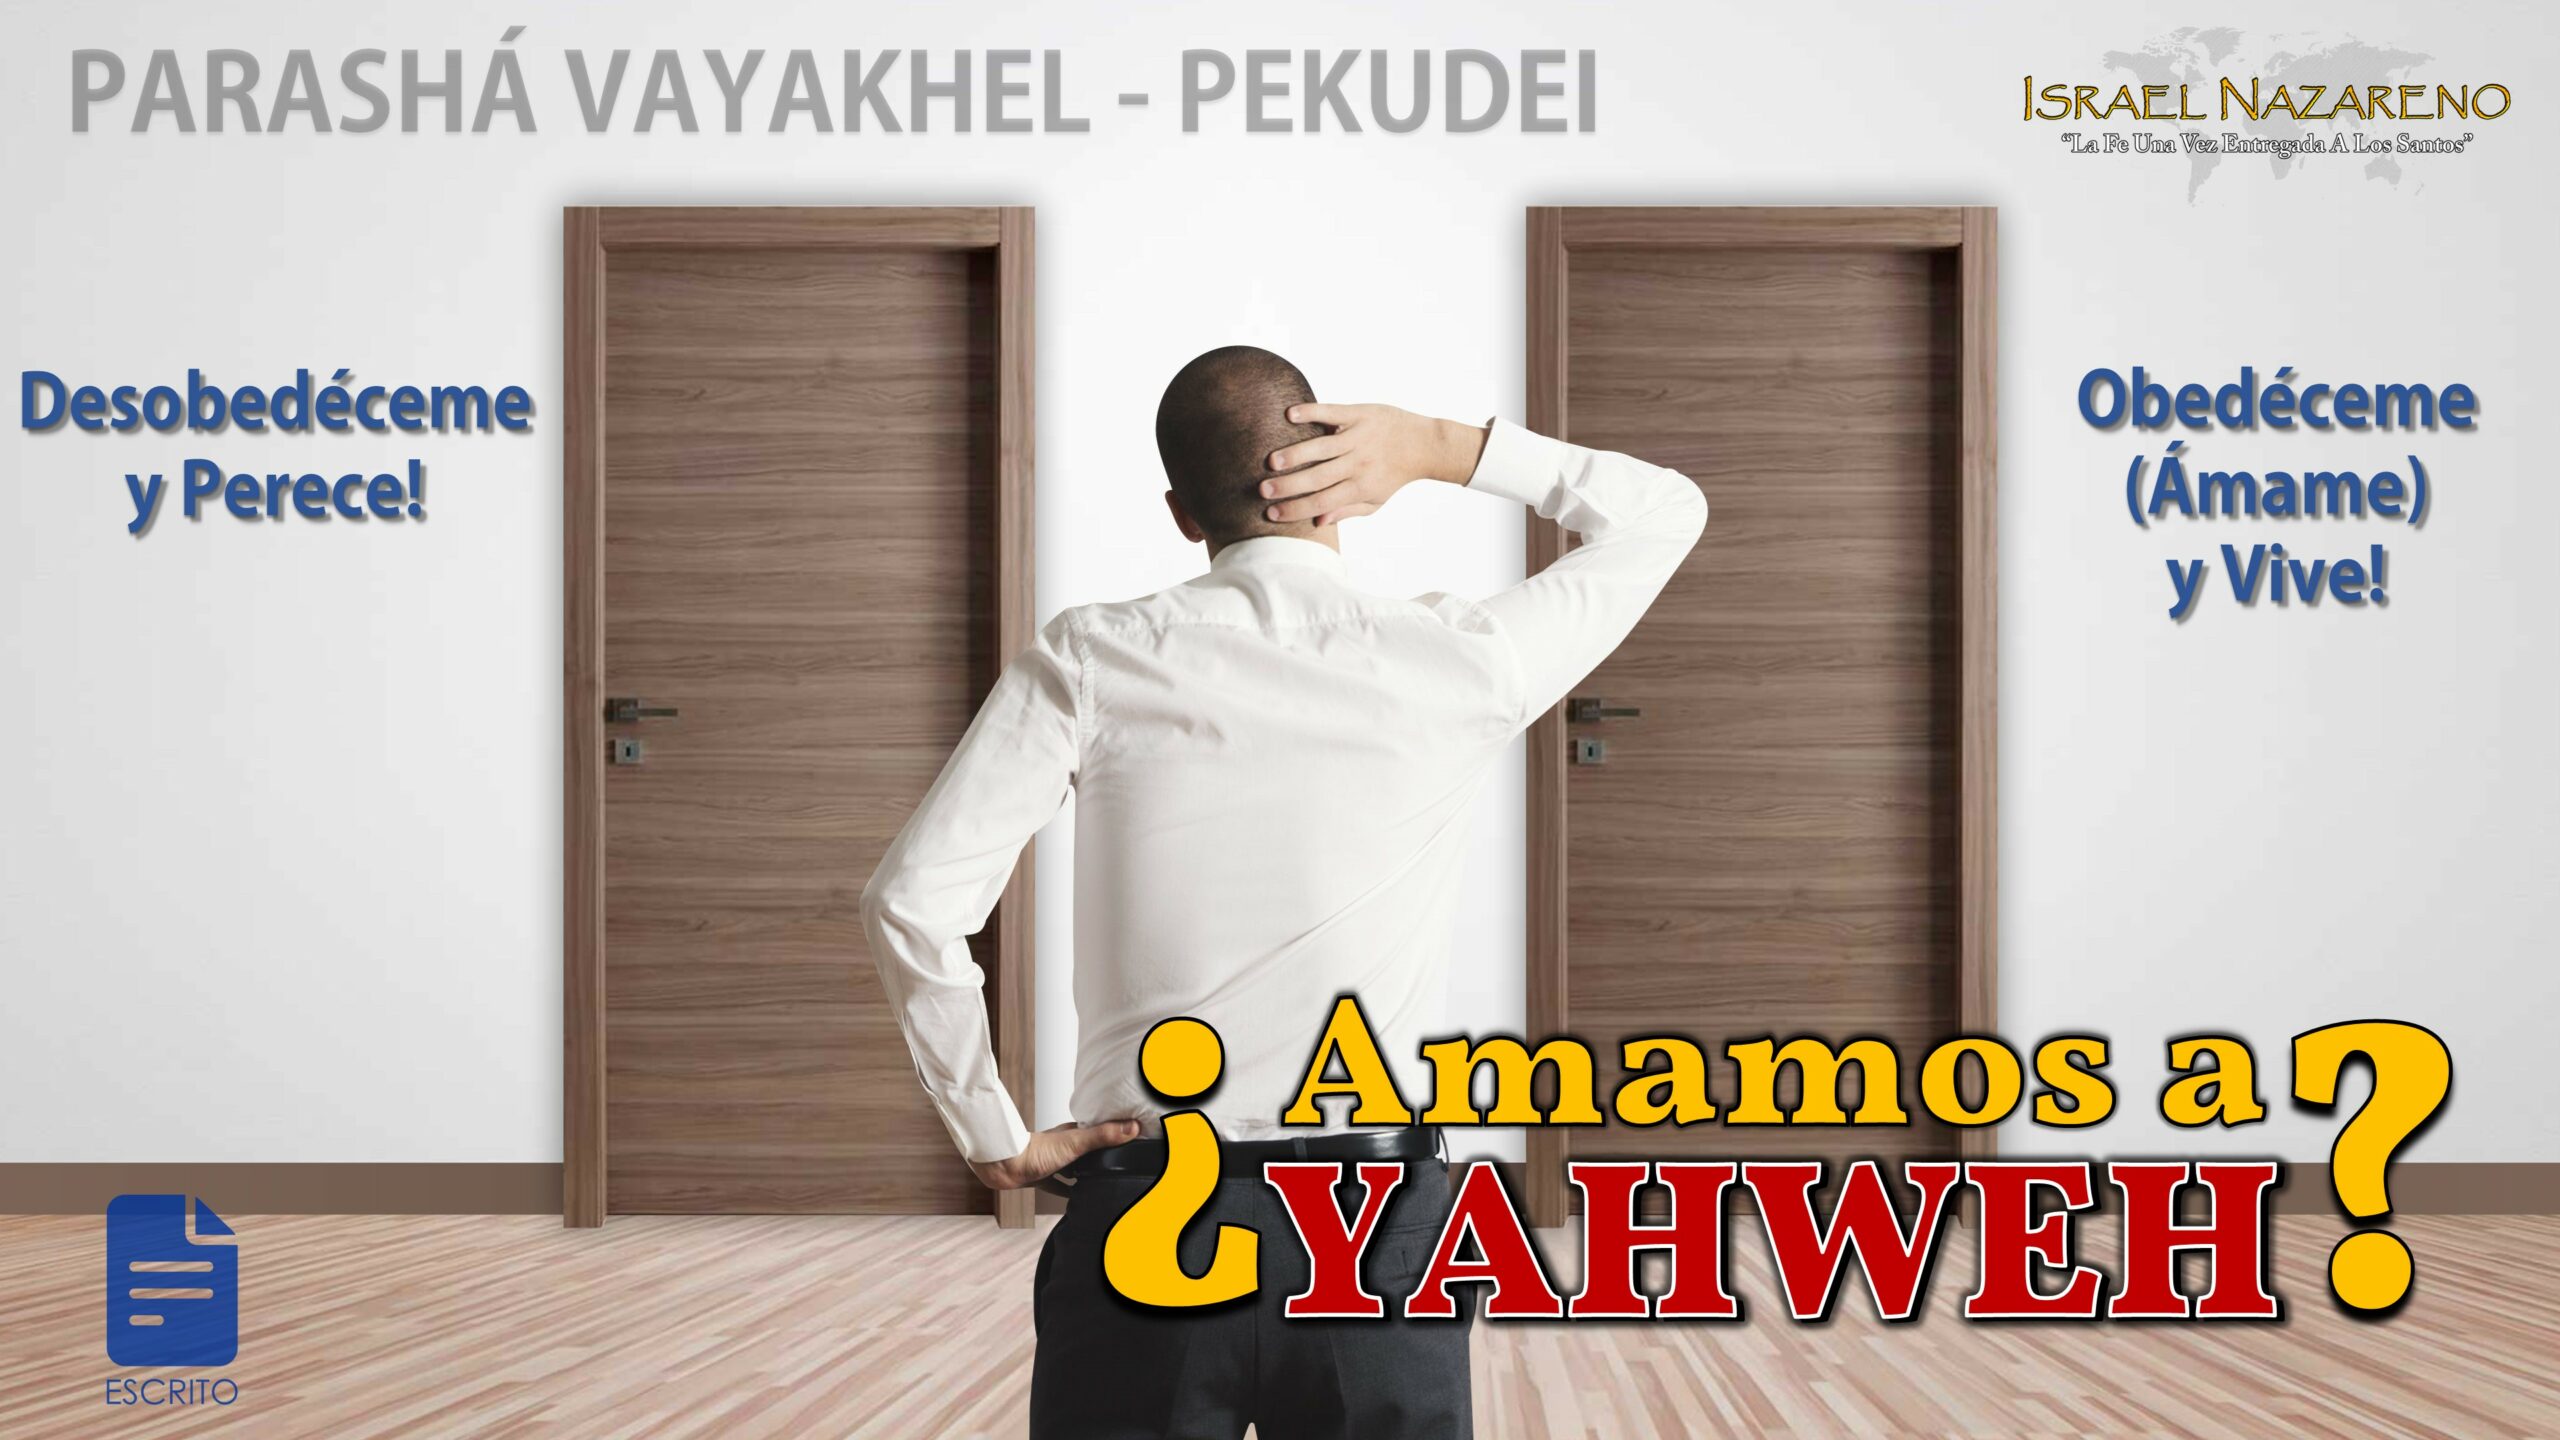 Vayakhel/Pekudei 2022: ¿Amamos a Yahweh?